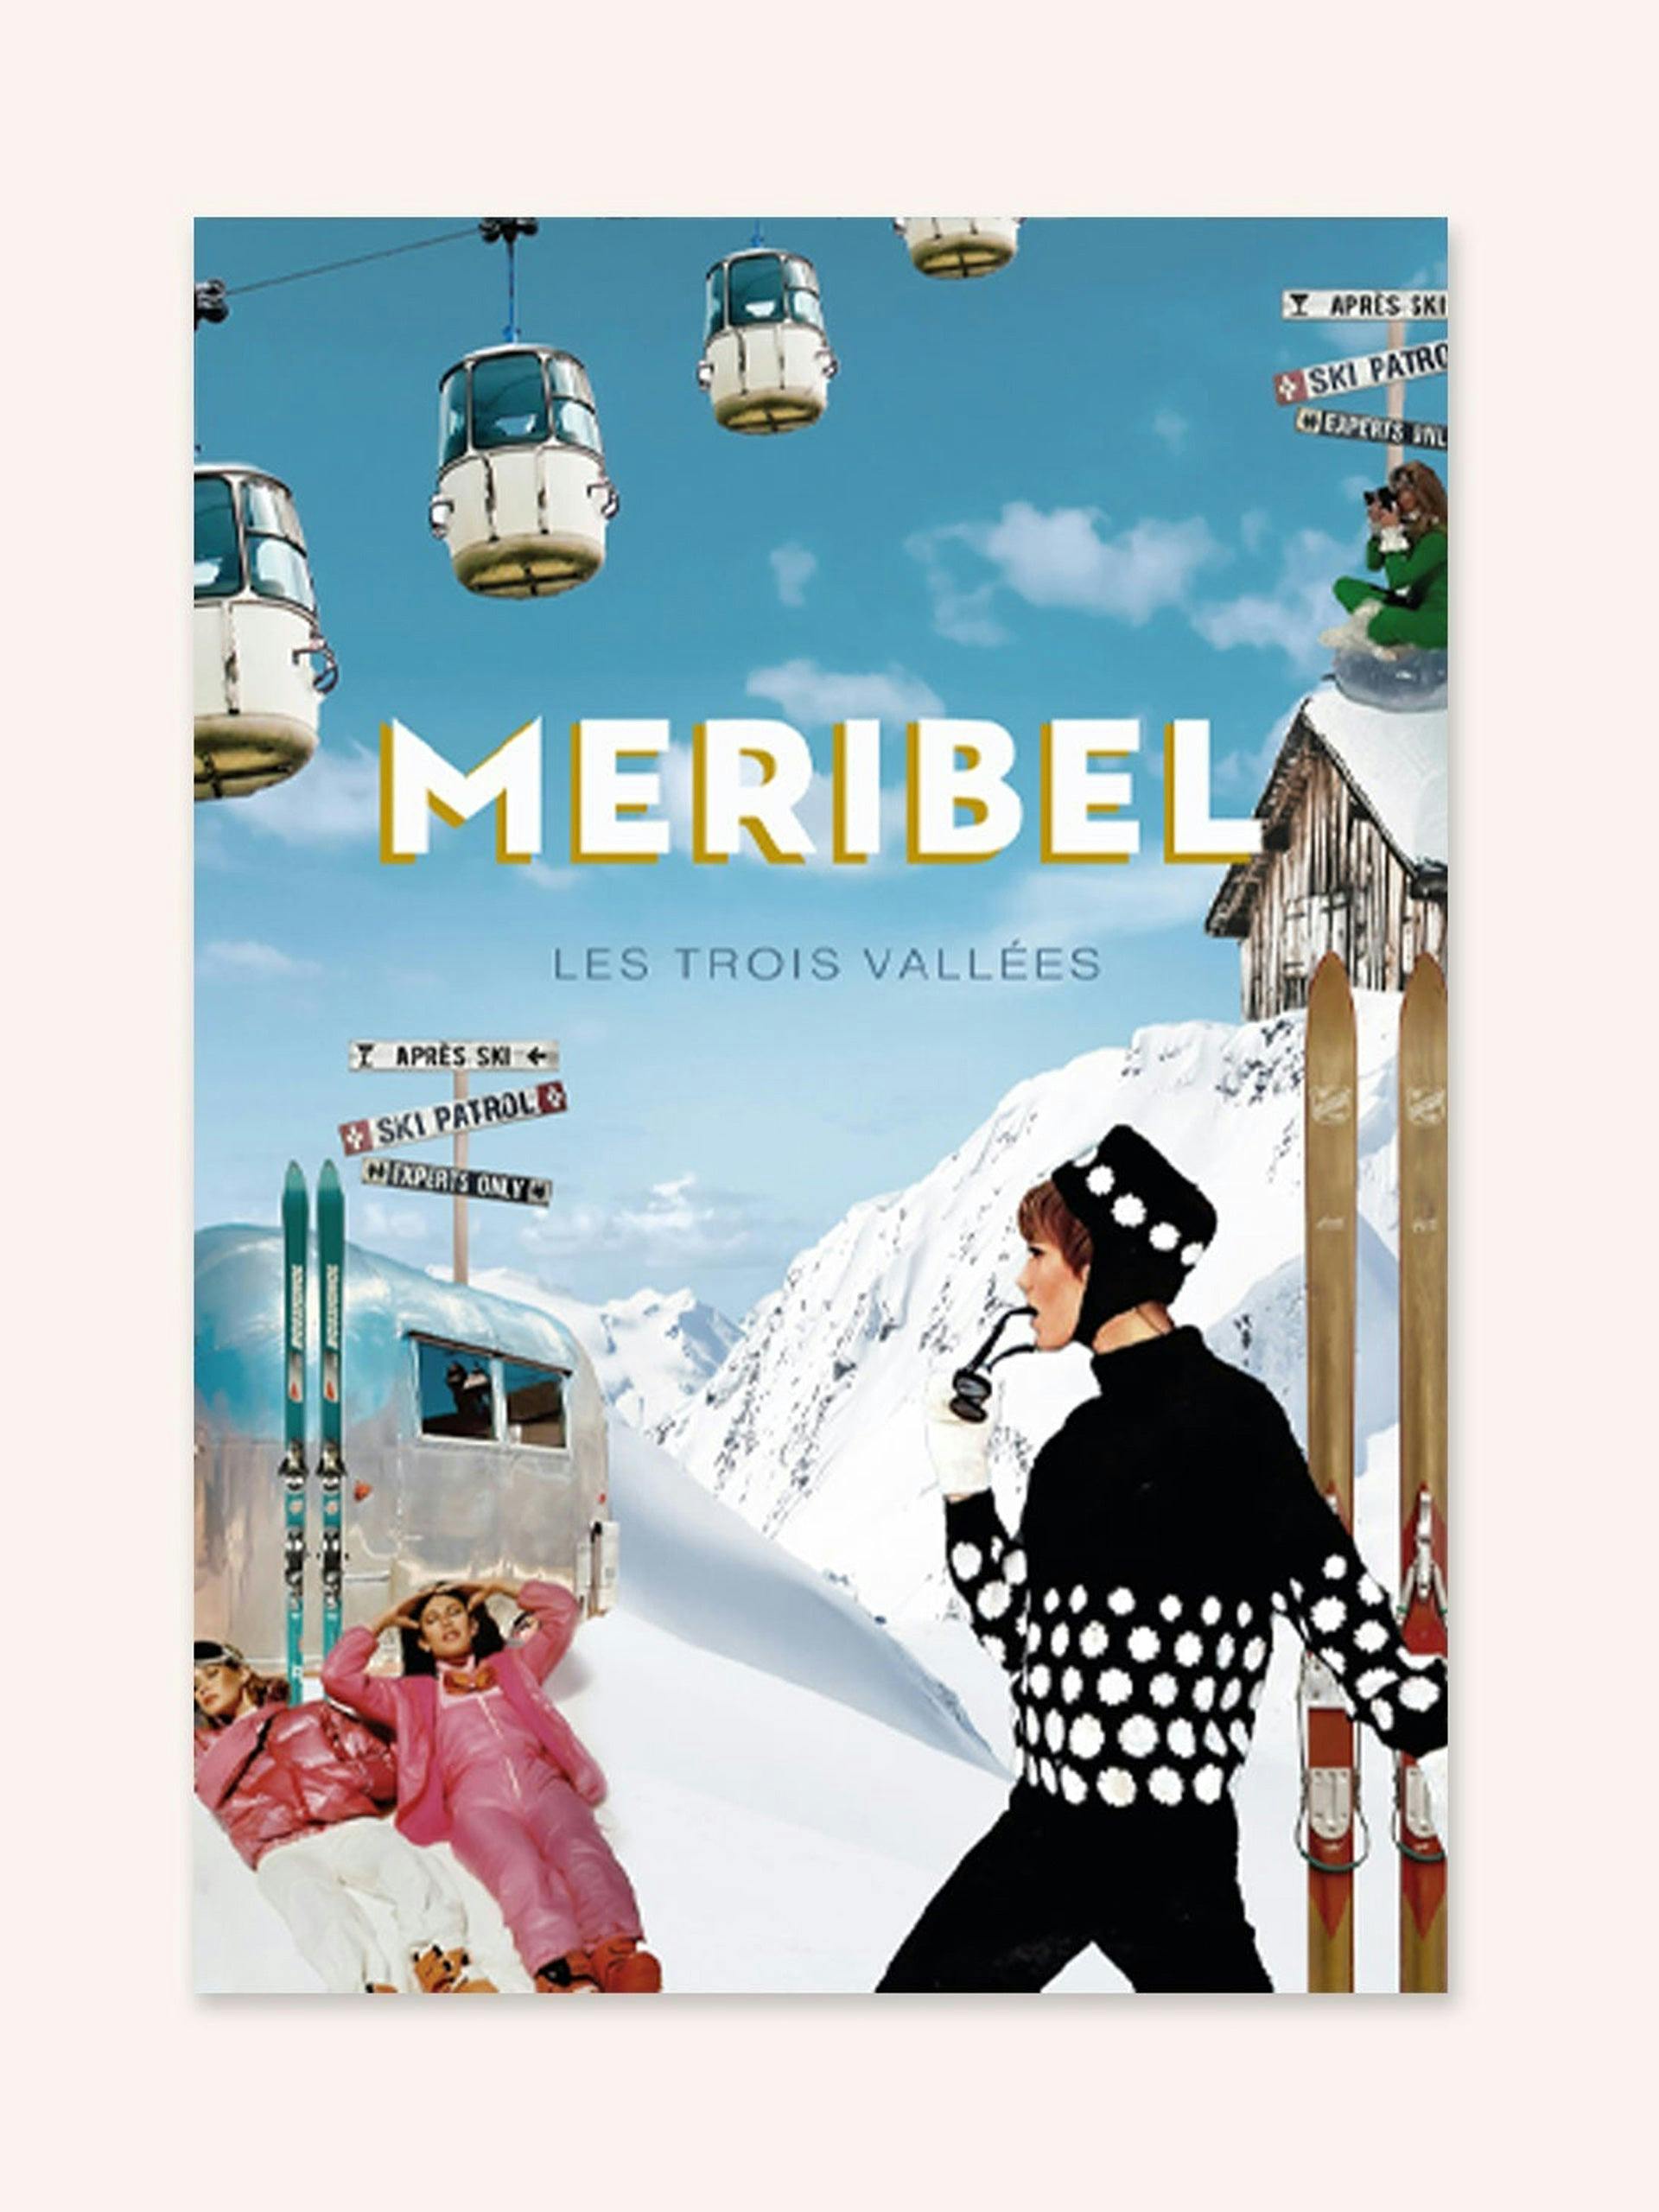 Meribel' art print